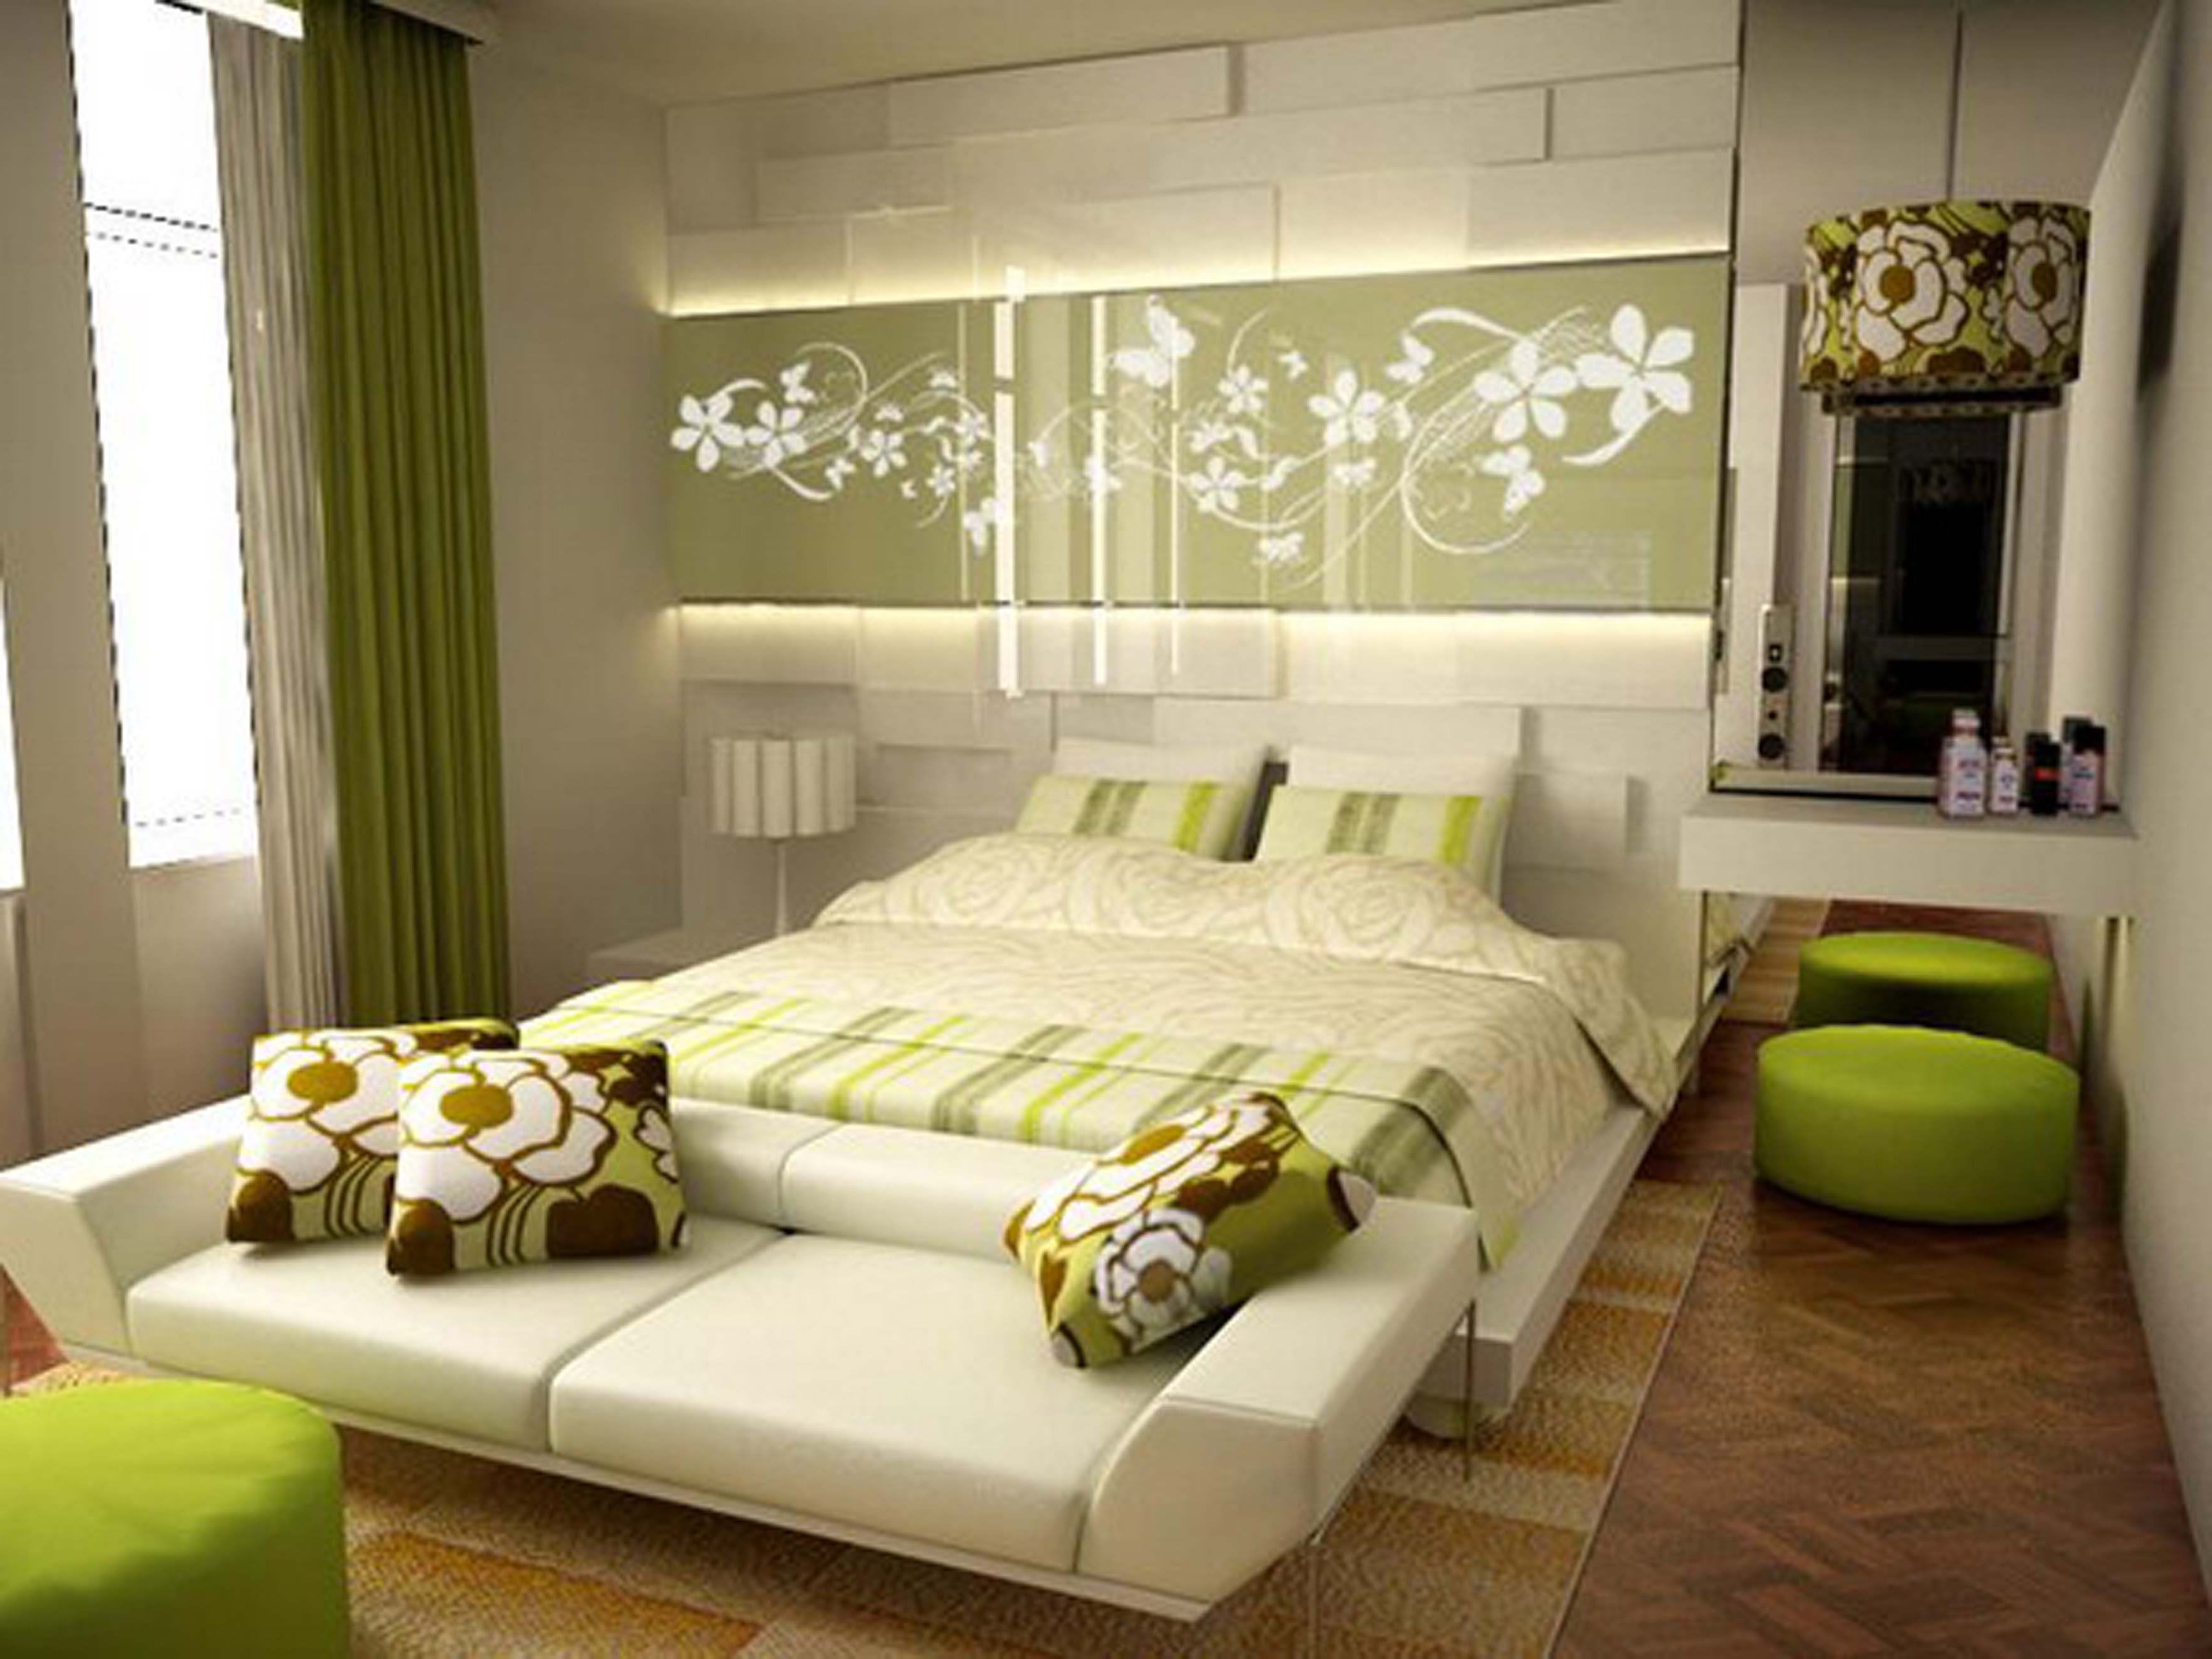 dormitor 9 mp în verde